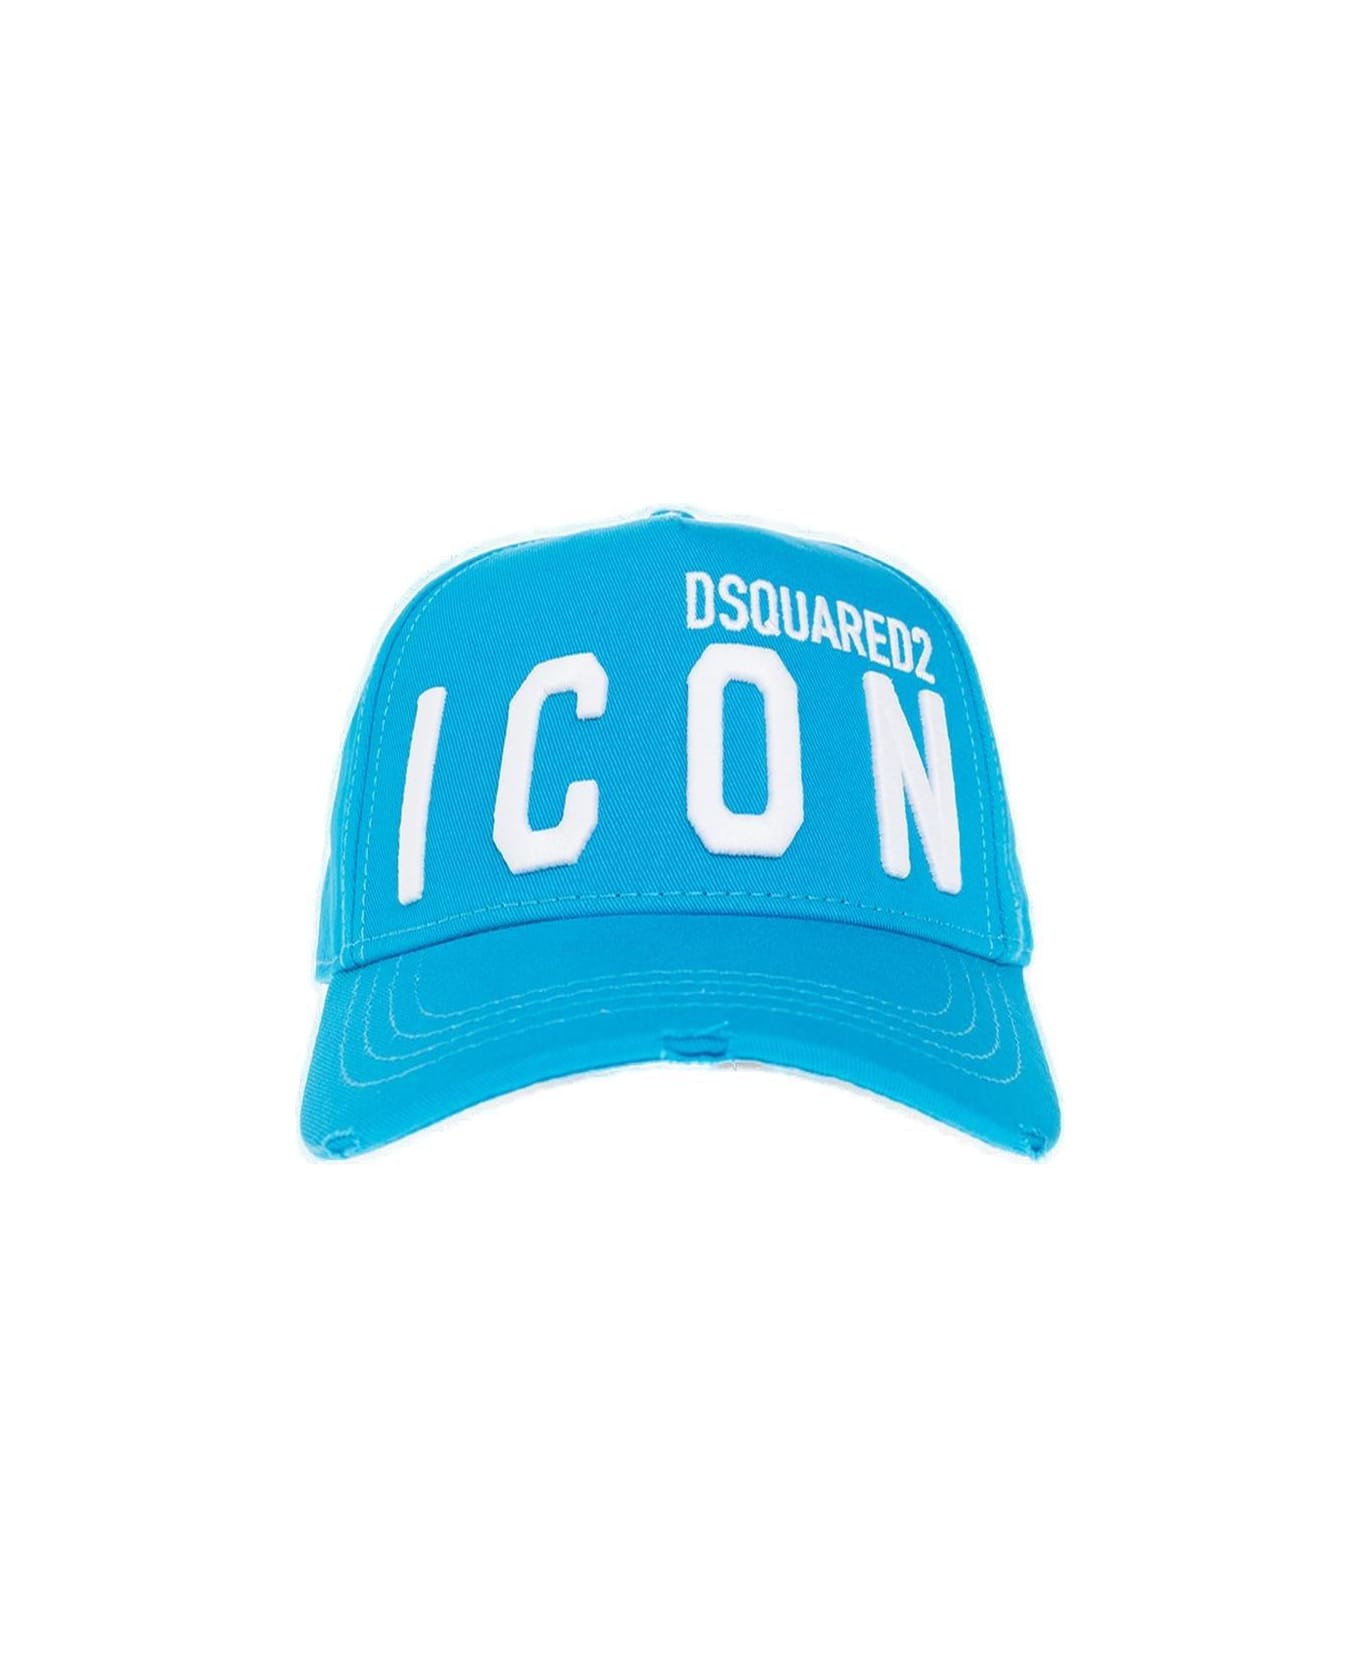 Dsquared2 Be Icon Light Blue Baseball Cap - Non definito